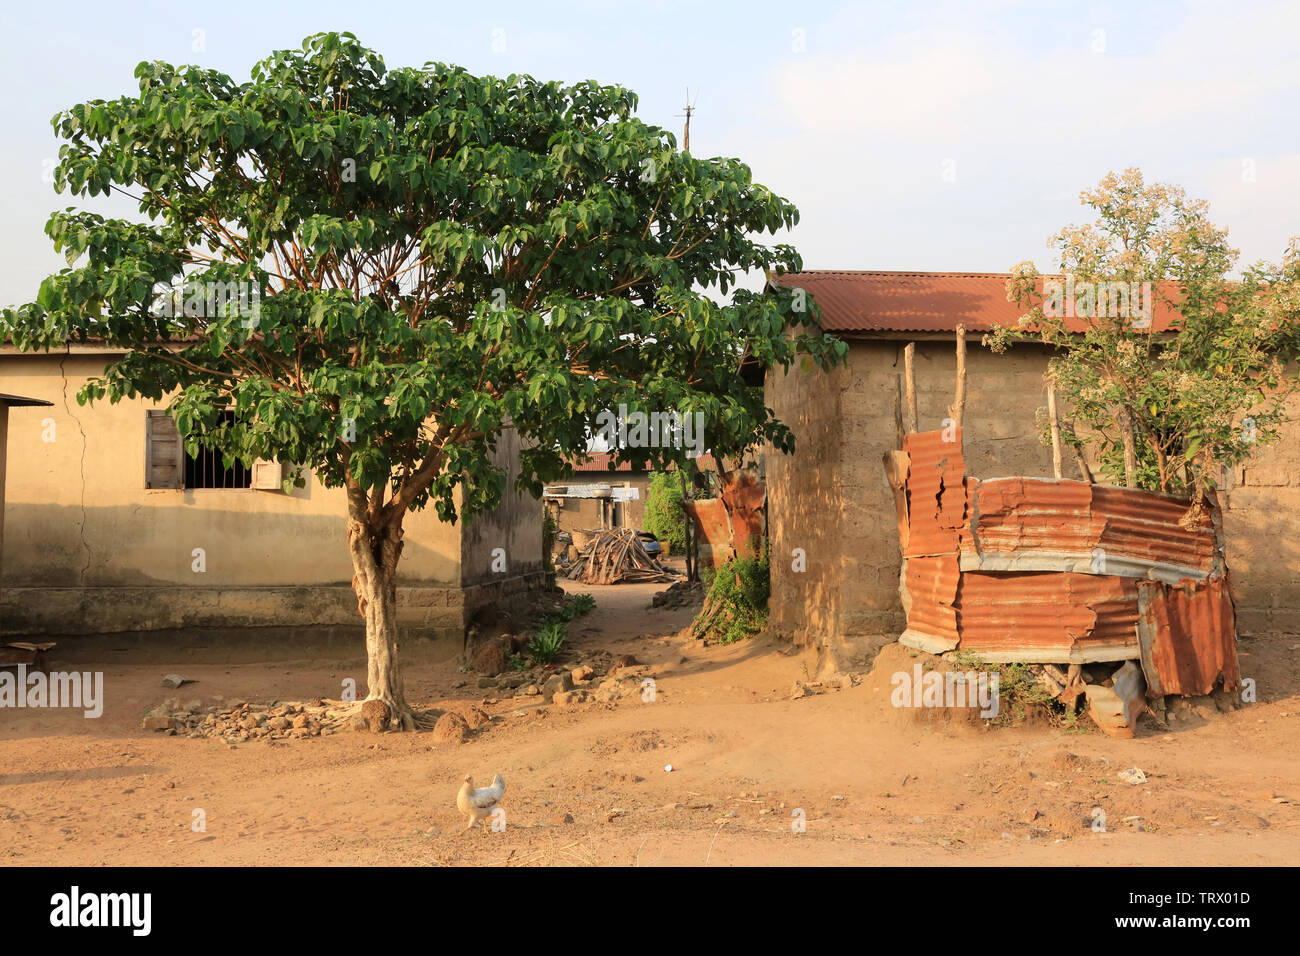 Village de Datcha. Datcha Attikpayé. Togo. Afrique de l’Ouest. Stockfoto